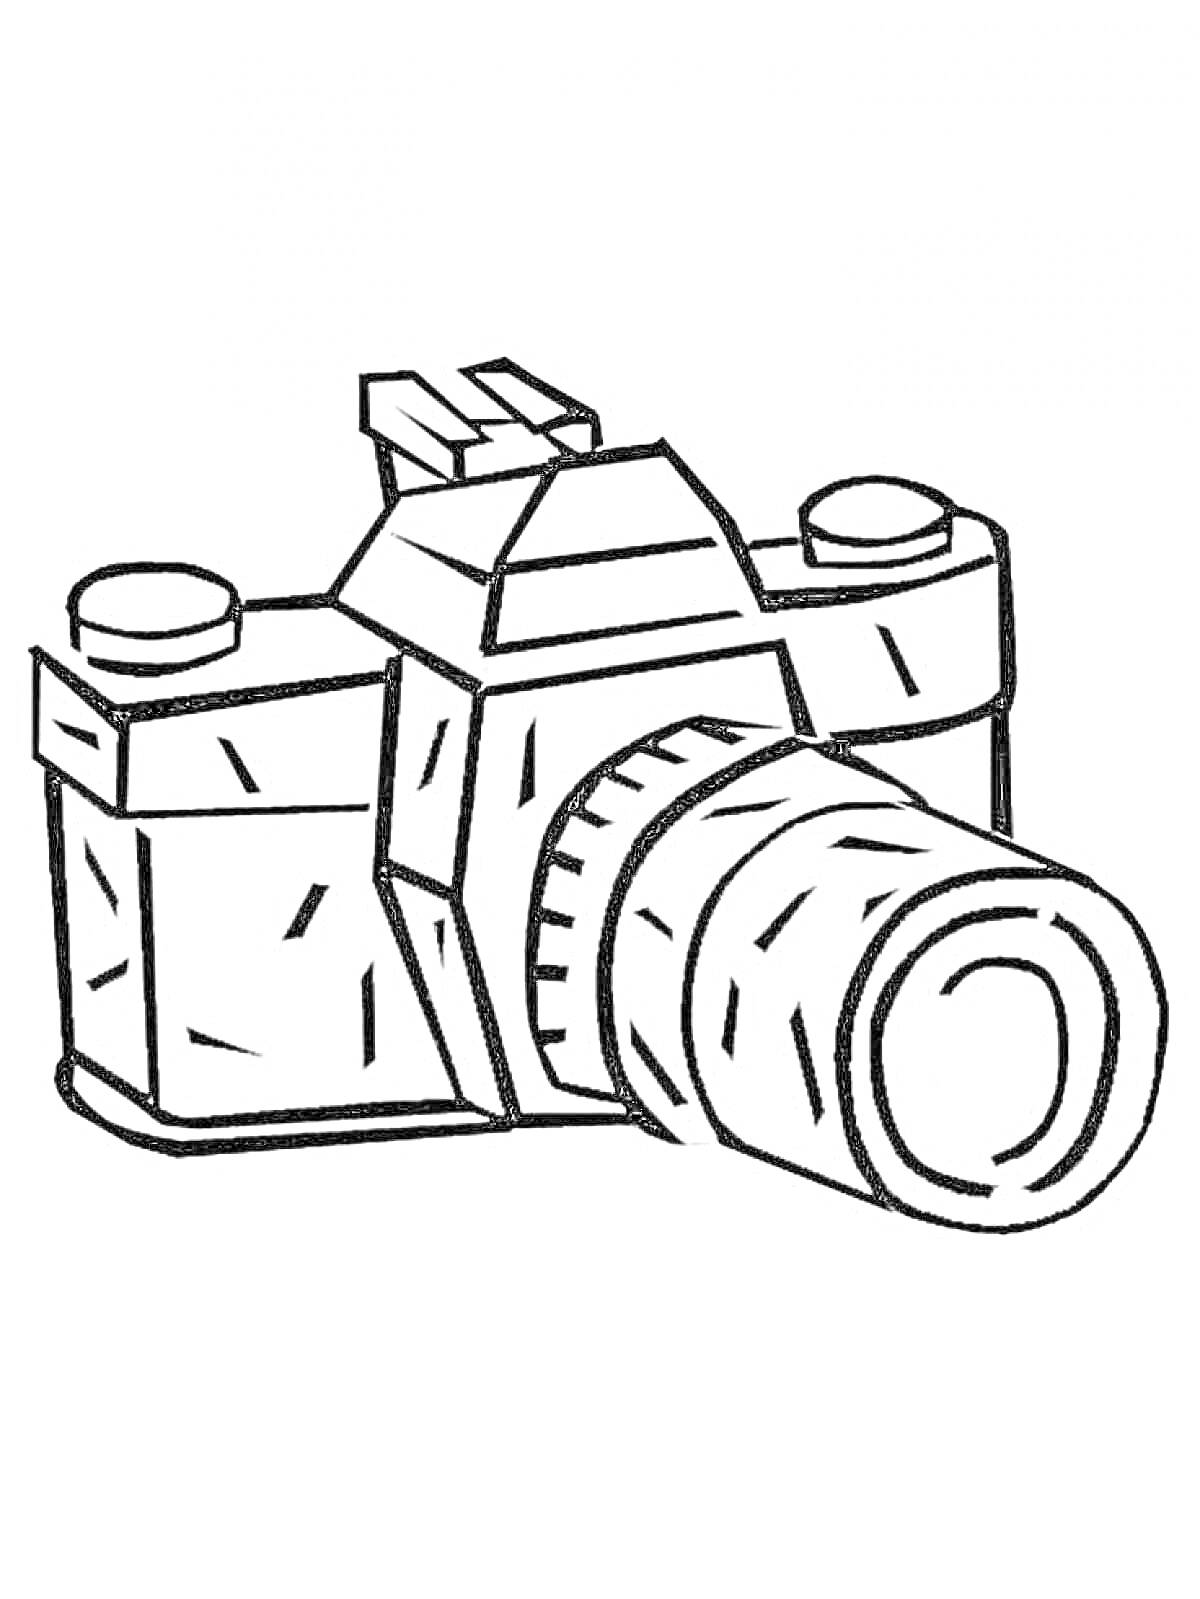 Раскраска Фотоаппарат с объективом, пентапризмой и кнопками управления